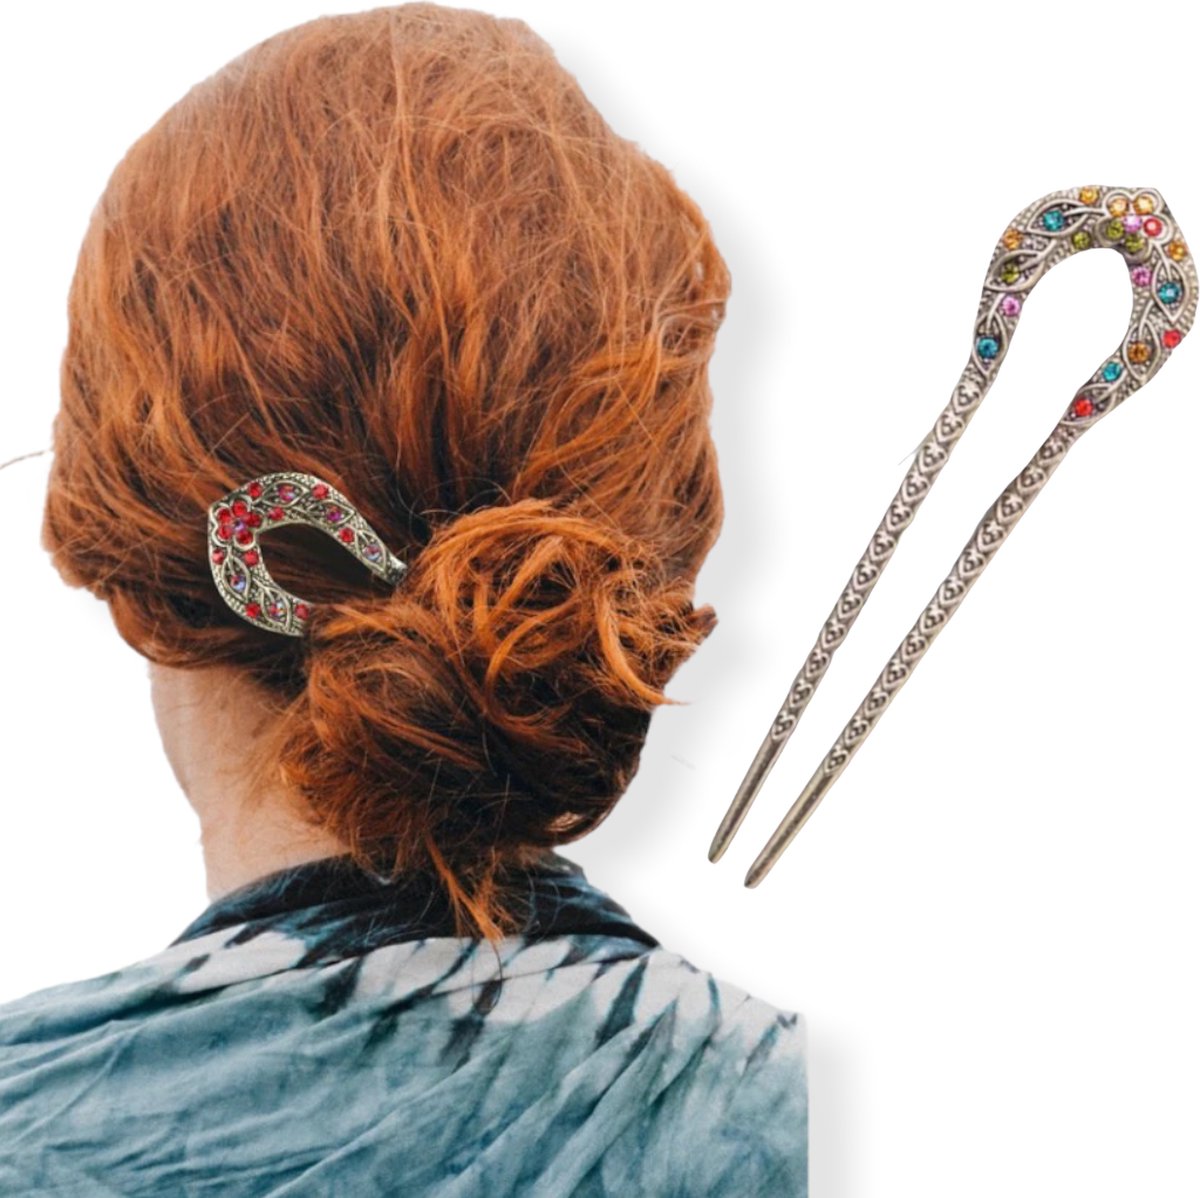 Hairpin Easy Fit Sparkle Multicolor de ideale haarspeld voor langer haar!